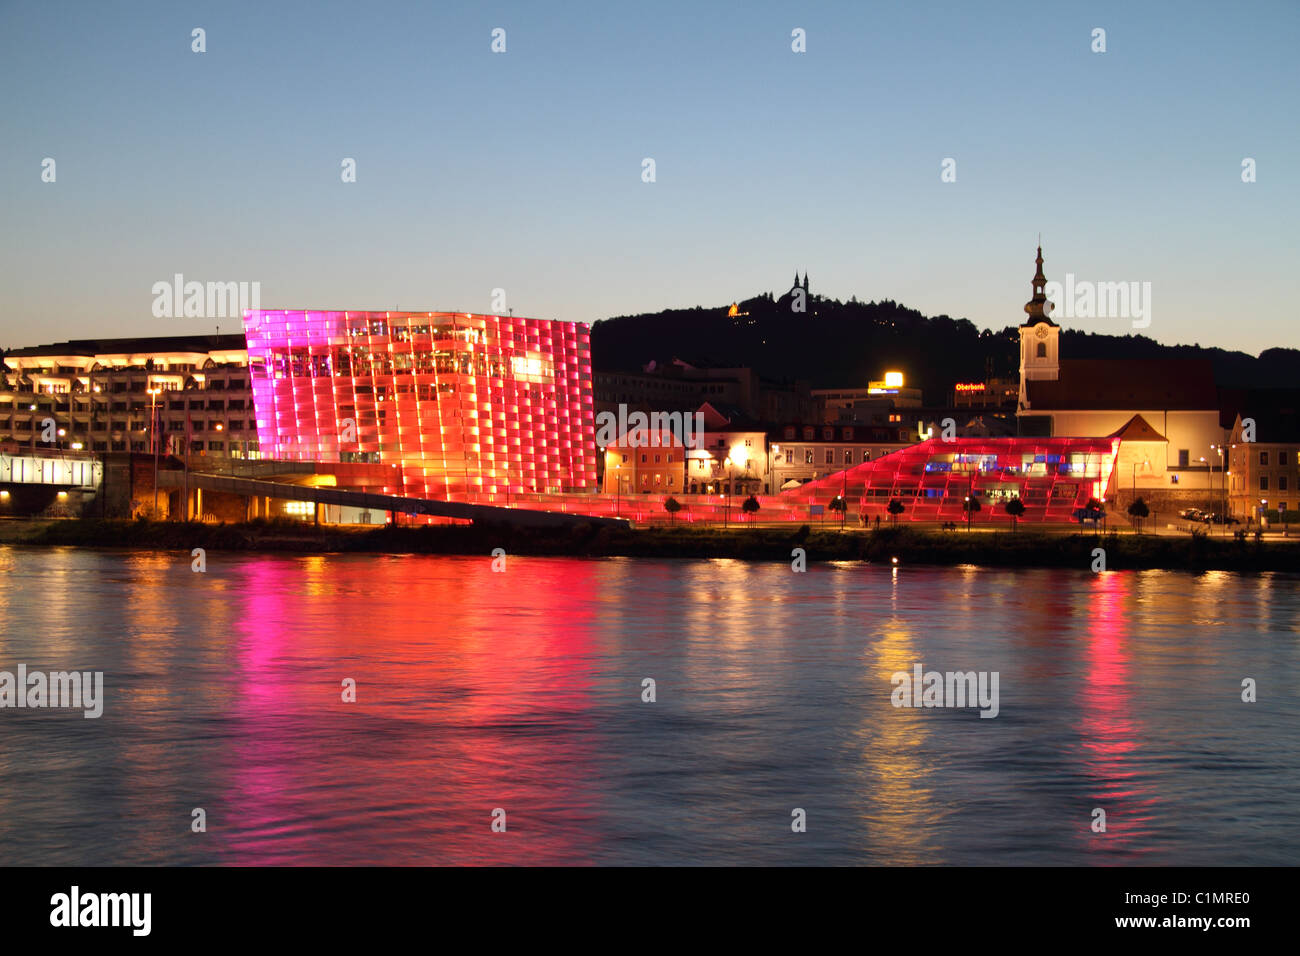 Centro de Ars Electronica, iluminada al anochecer, Linz, Austria Foto de stock